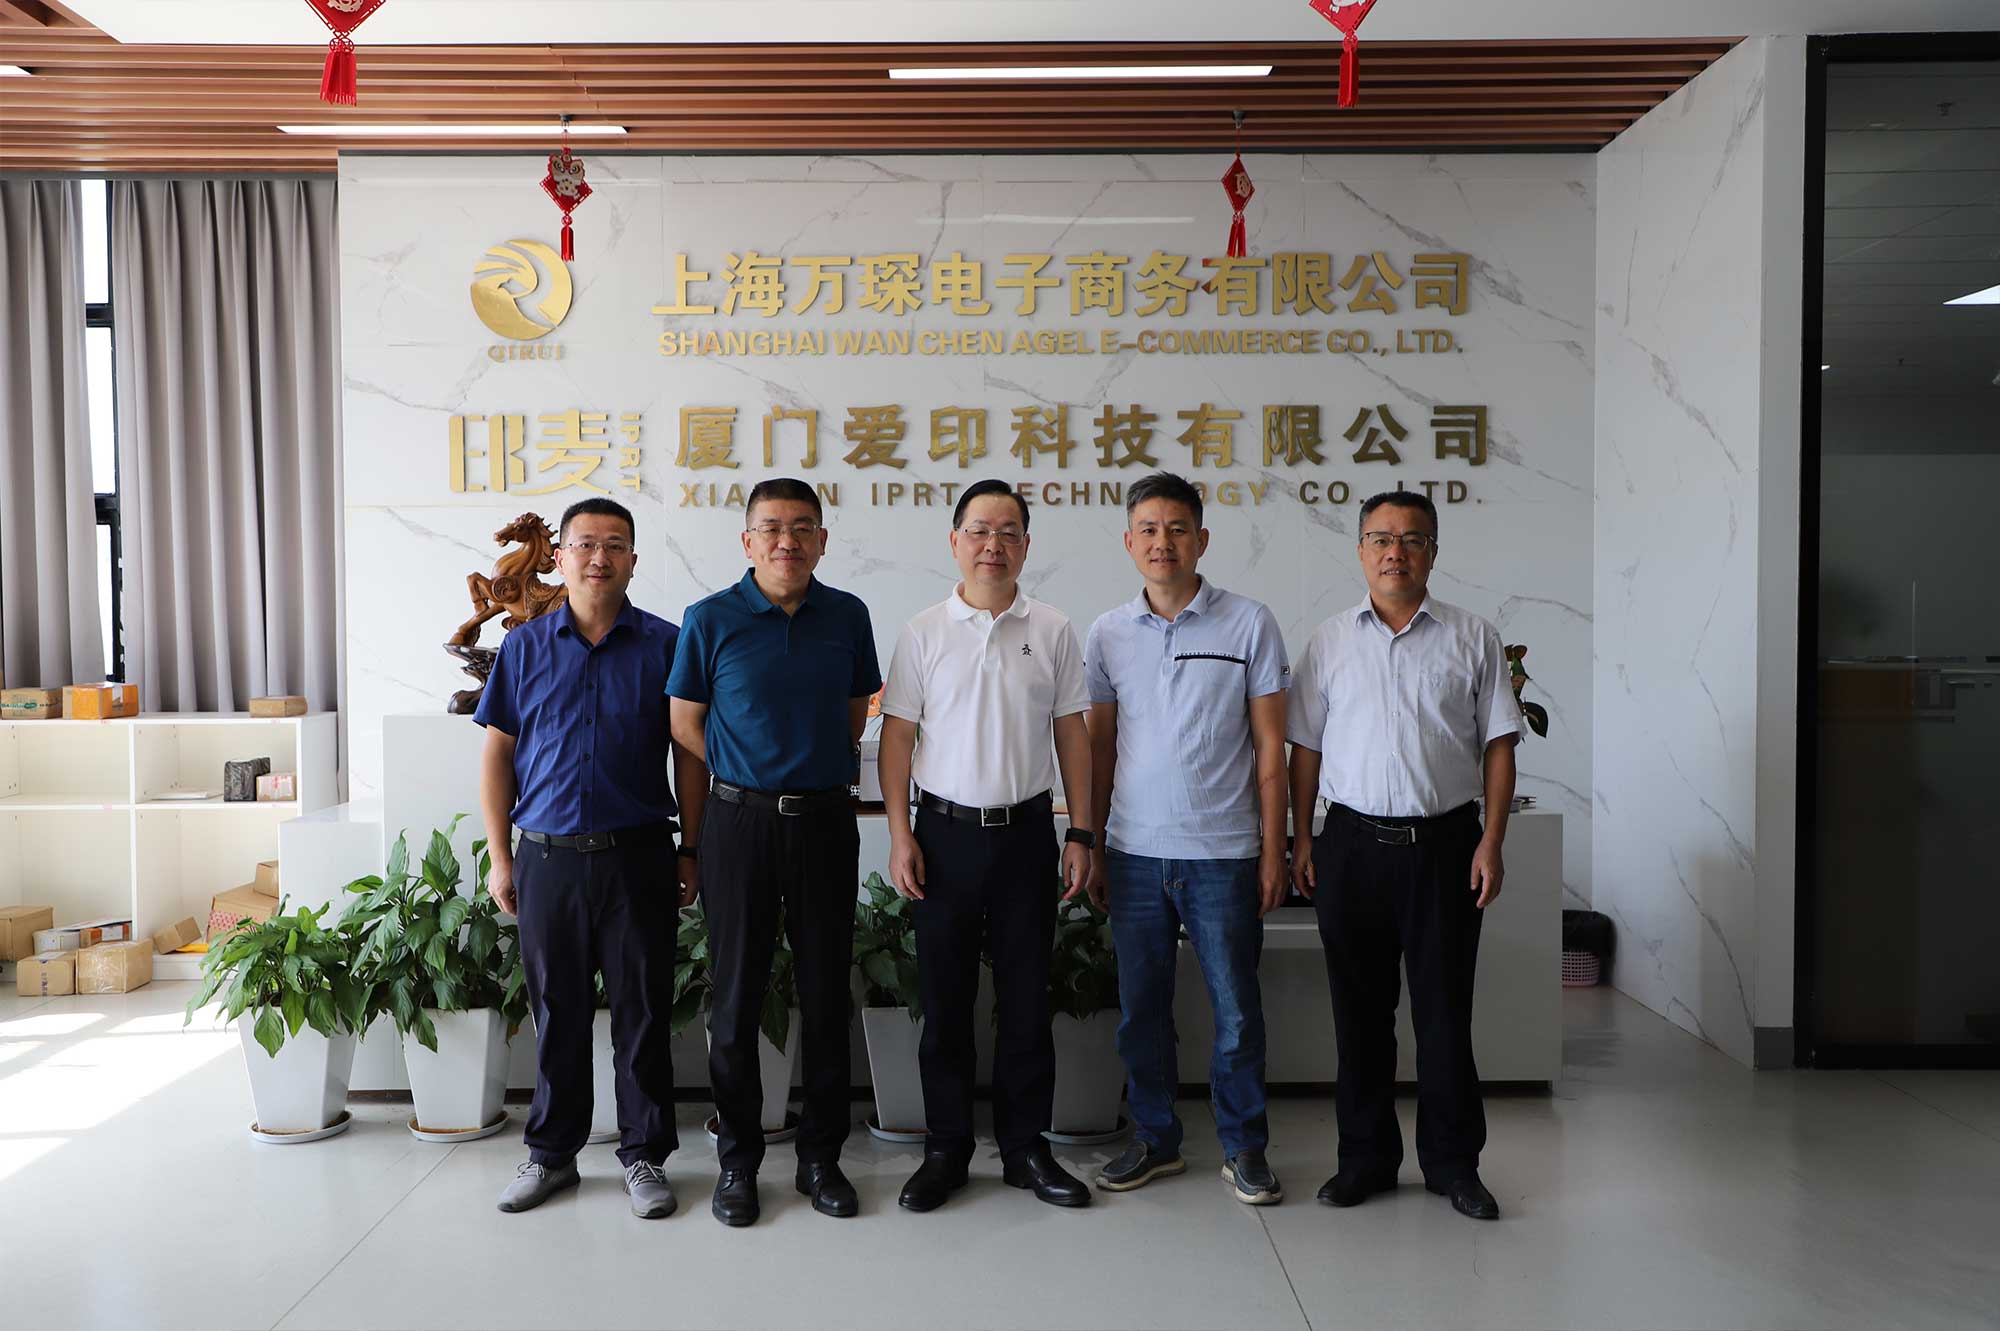 El vicepresidente de la CCPPCh de Xiamen, Li Qinhui, y otros visitaron la tecnología IPRT para investigar y orientar